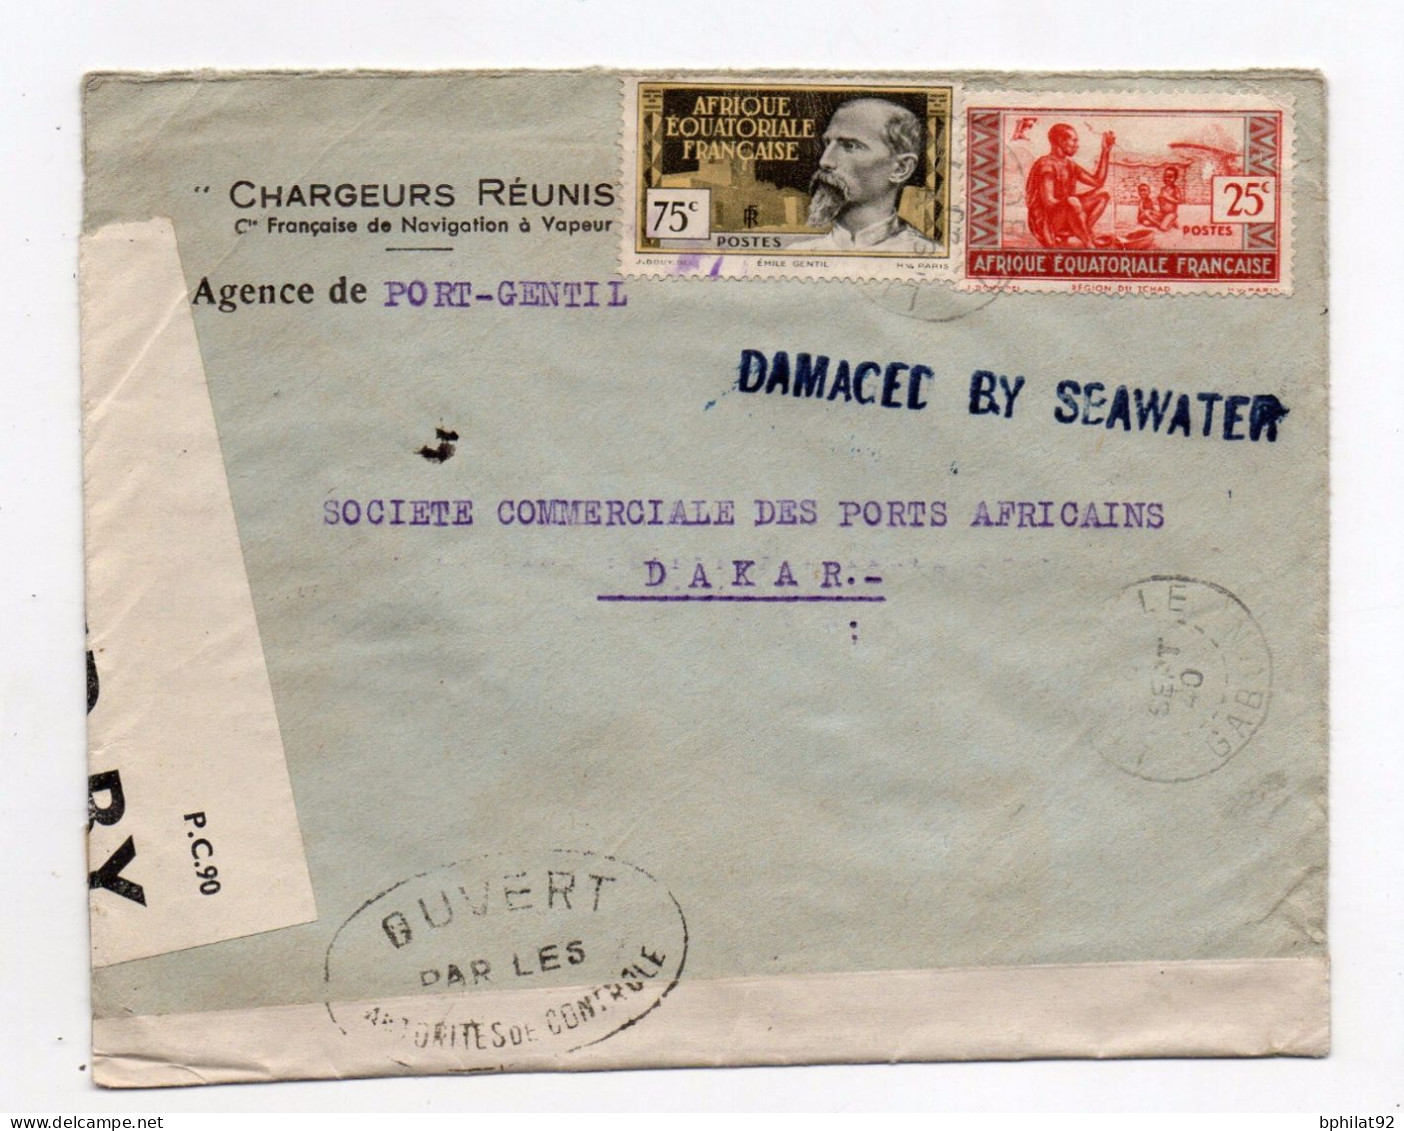 !!! LETTRE DE PORT GENTIL DE SEPTEMBRE 1940 POUR DAKAR, MARQUE LINEAIRE BLEUE "DAMAGED BY SEAWATER" - Ramppost